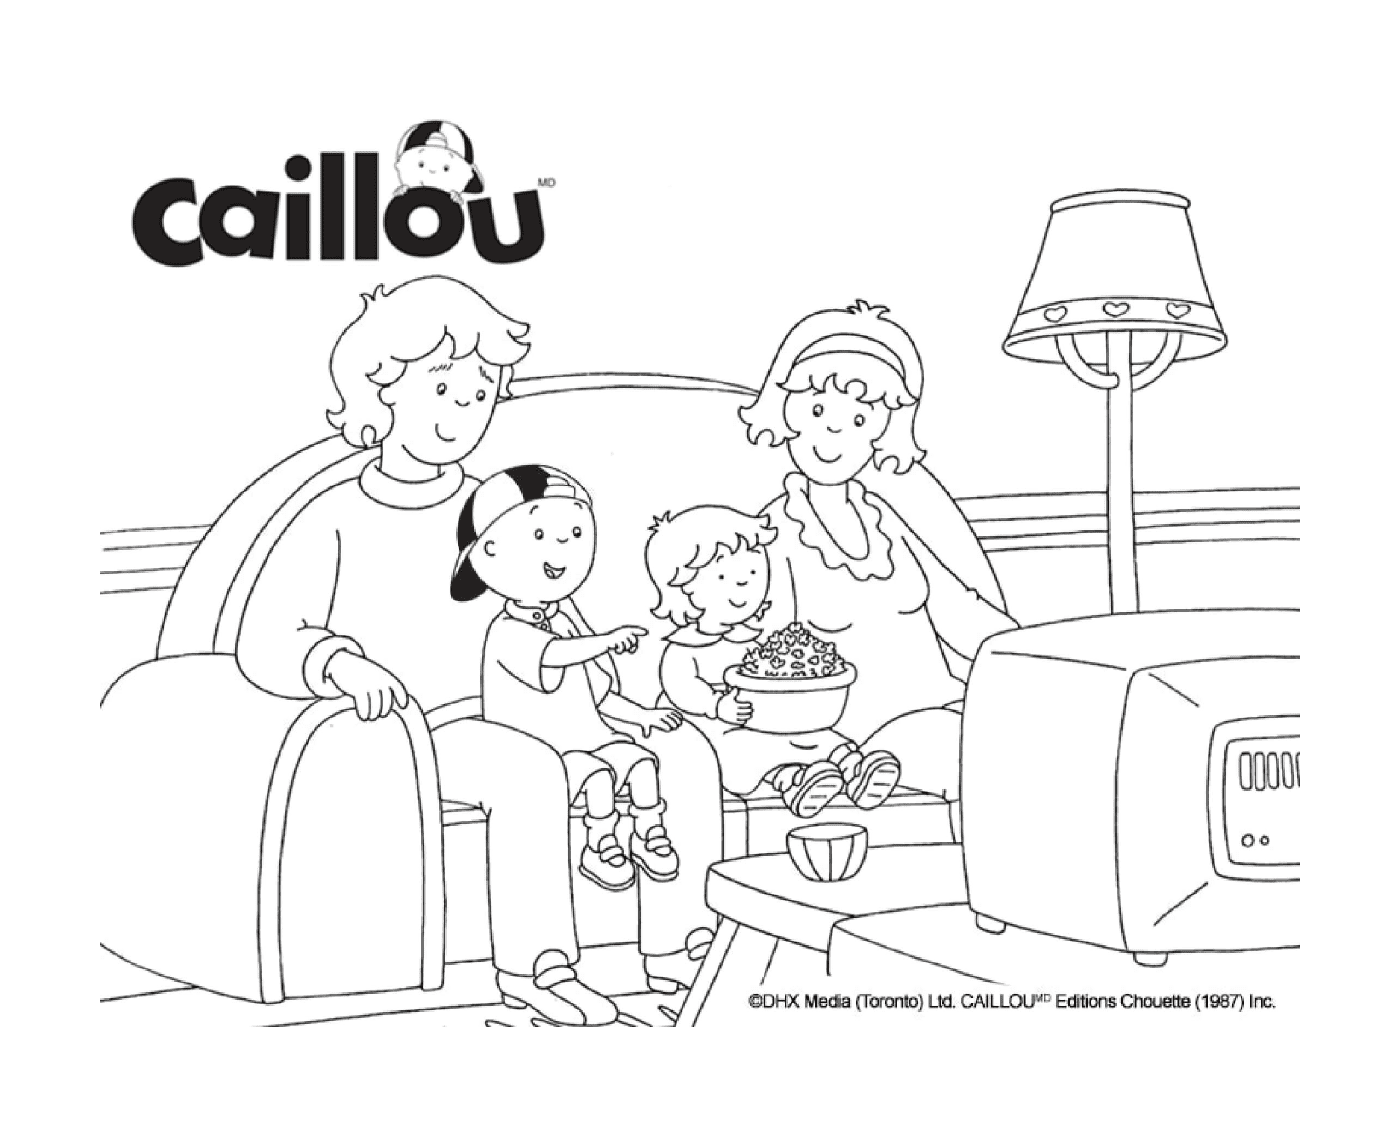  La familia Caillou está viendo una película en la televisión 